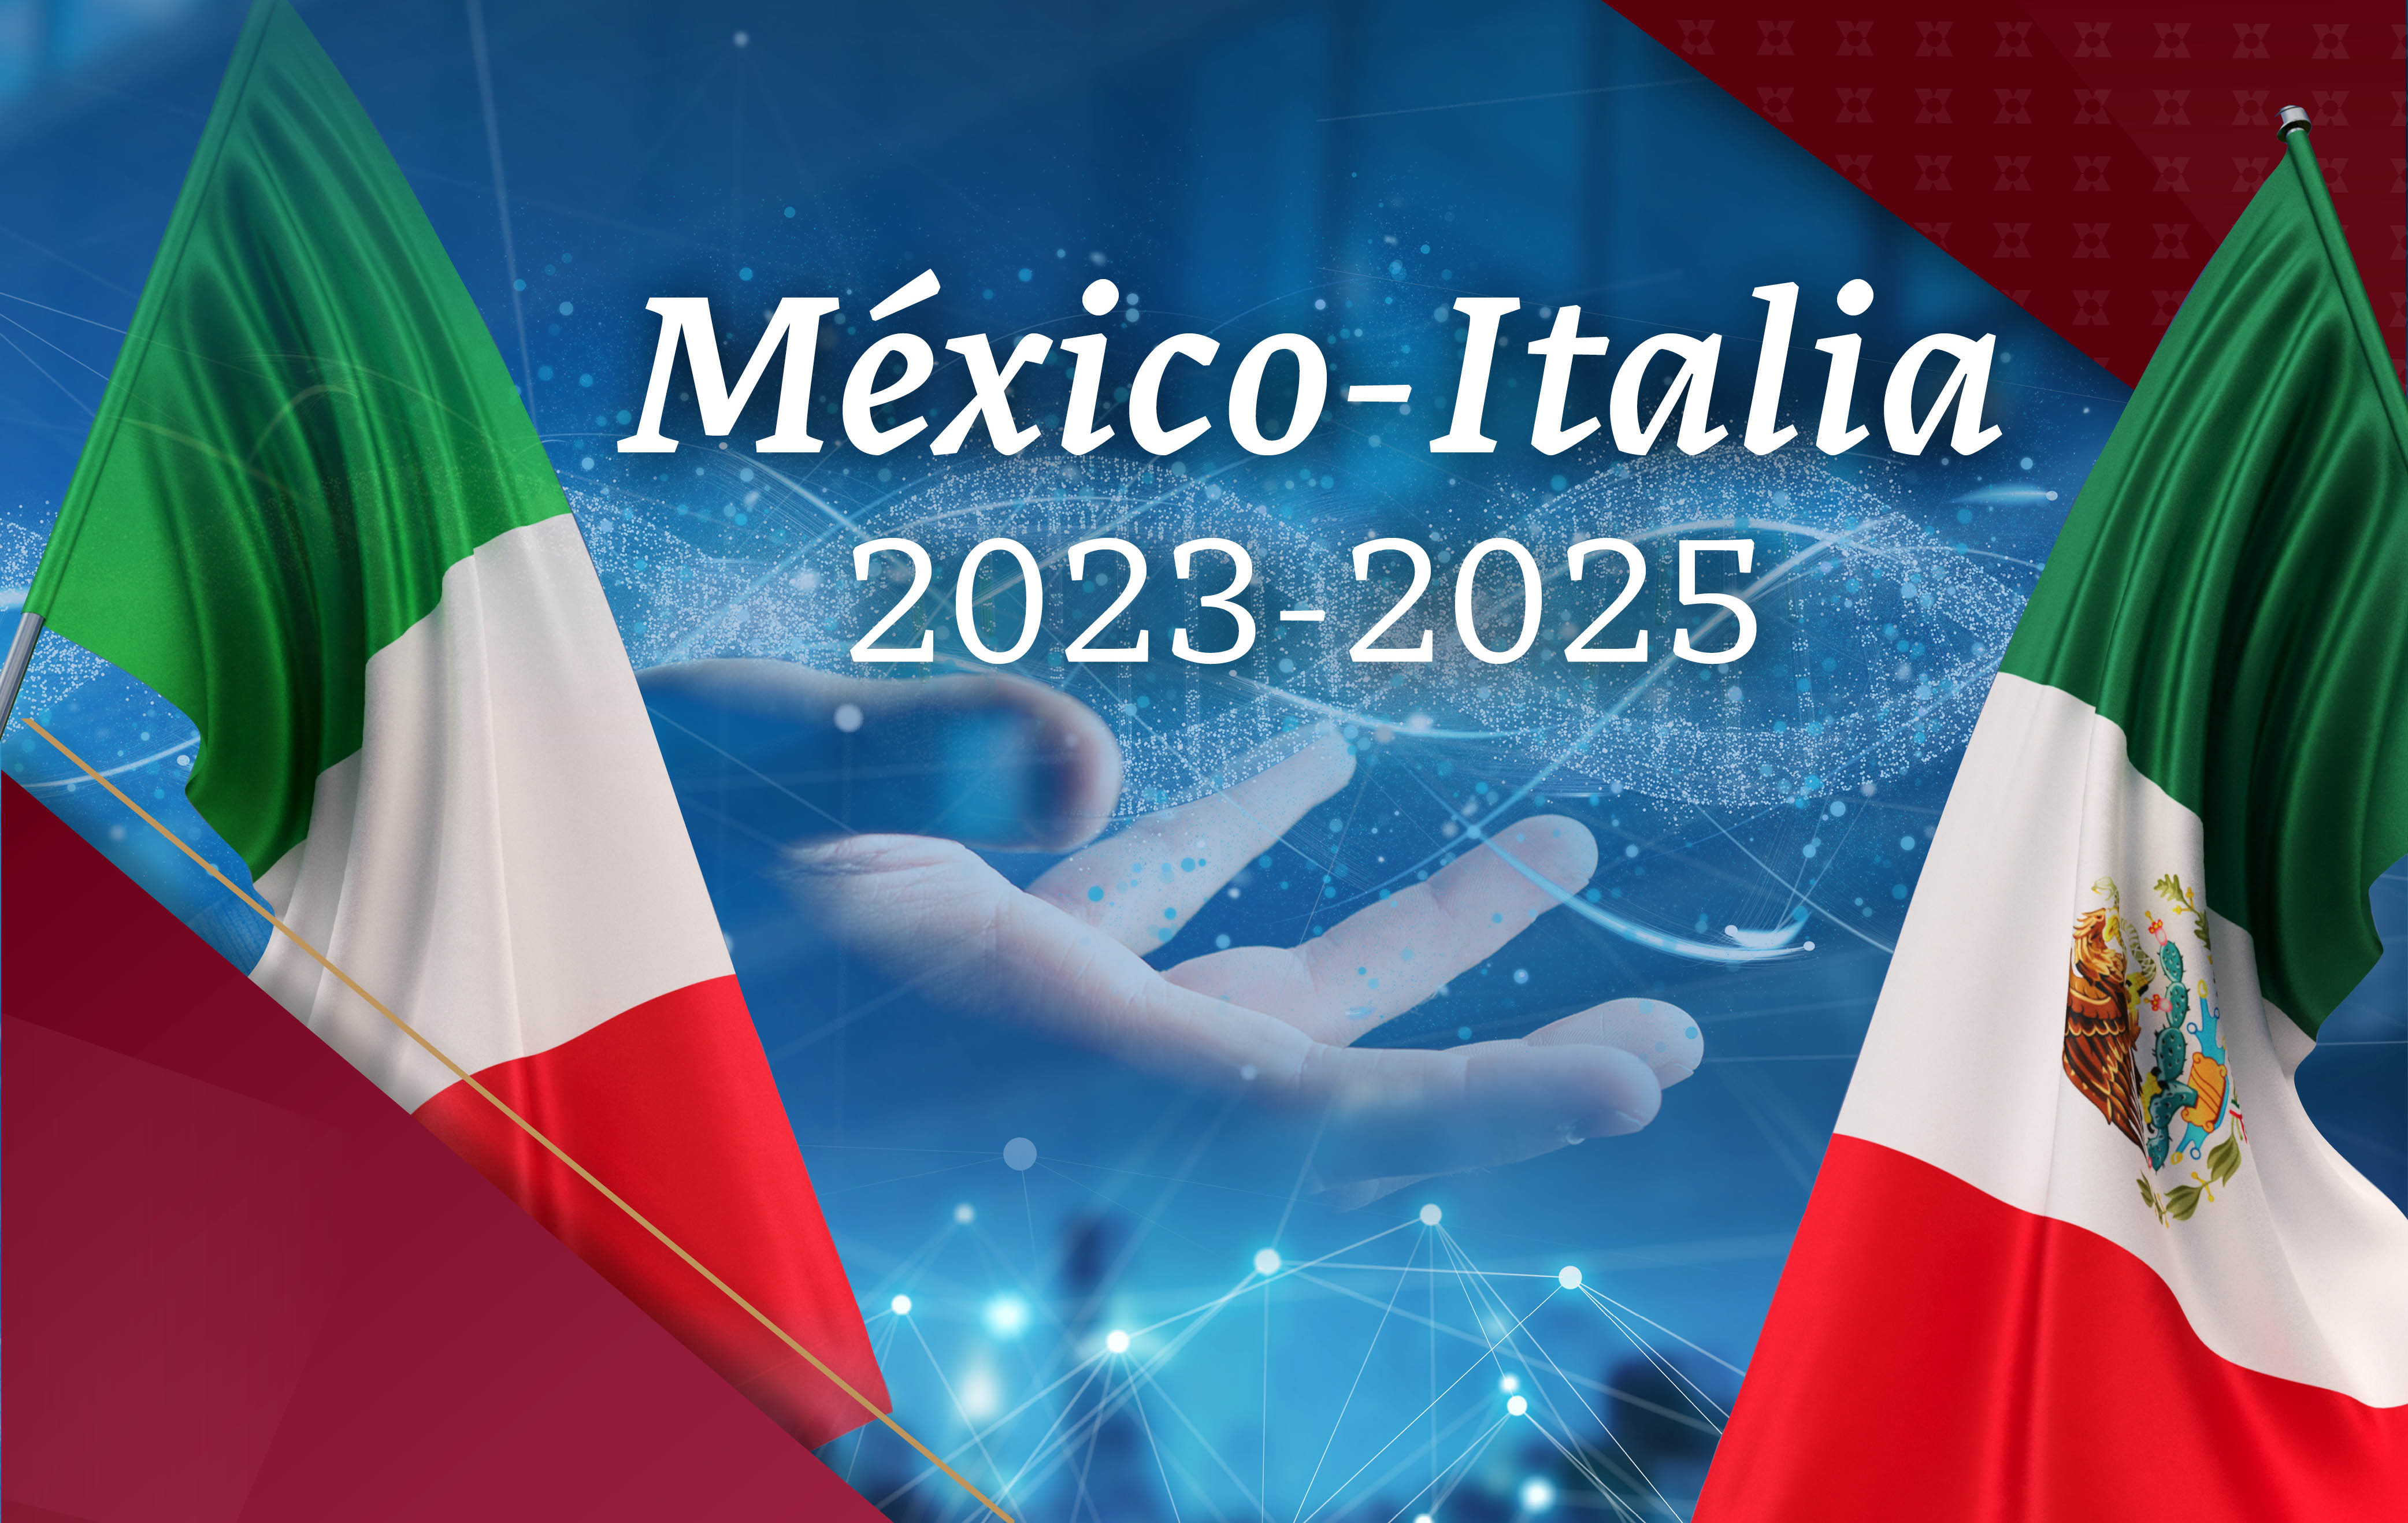 CONVOCATORIA PARA PROPUESTAS DE INVESTIGACIÓN CONJUNTA PARA LOS AÑOS 2023-2025 MEXICO-ITALIA COOPERACIÓN CIENTÍFICA Y TECNOLÓGICA